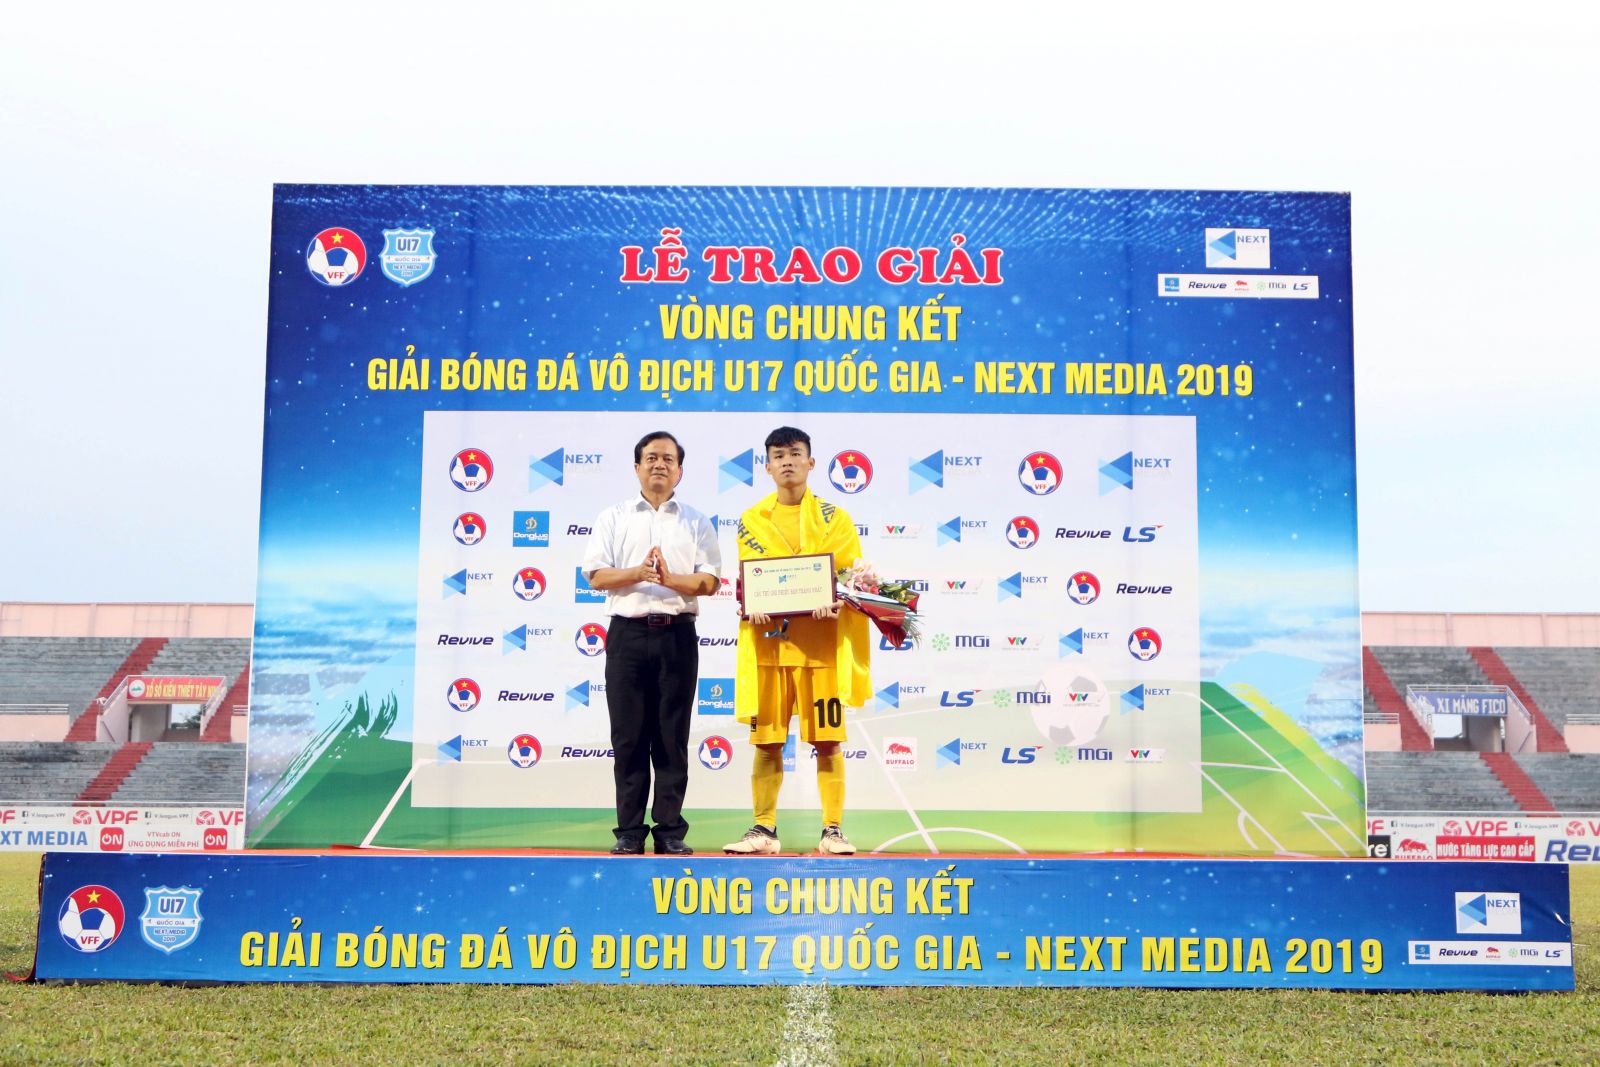 Thắng kịch tính trên chấm 11m, U17 Thanh Hóa đăng quang ngôi vô địch Quốc gia - Ảnh 5.